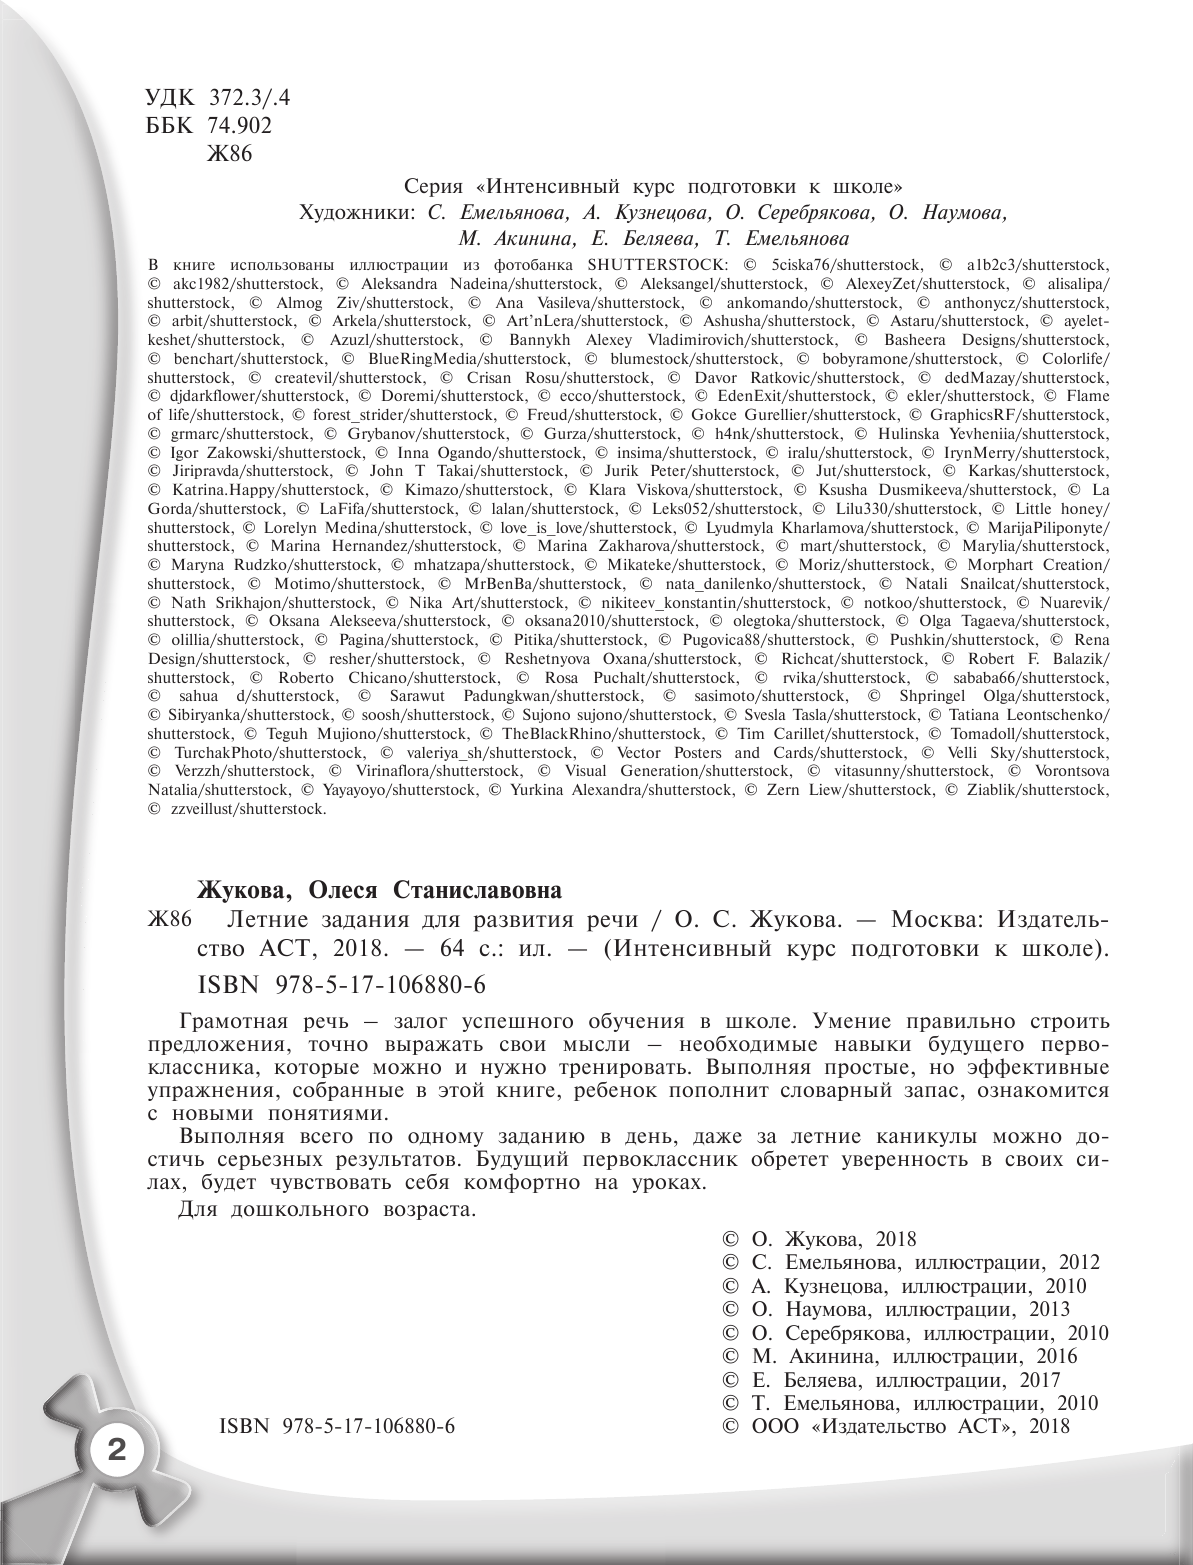 Жукова Олеся Станиславовна Летние задания для развития речи - страница 3